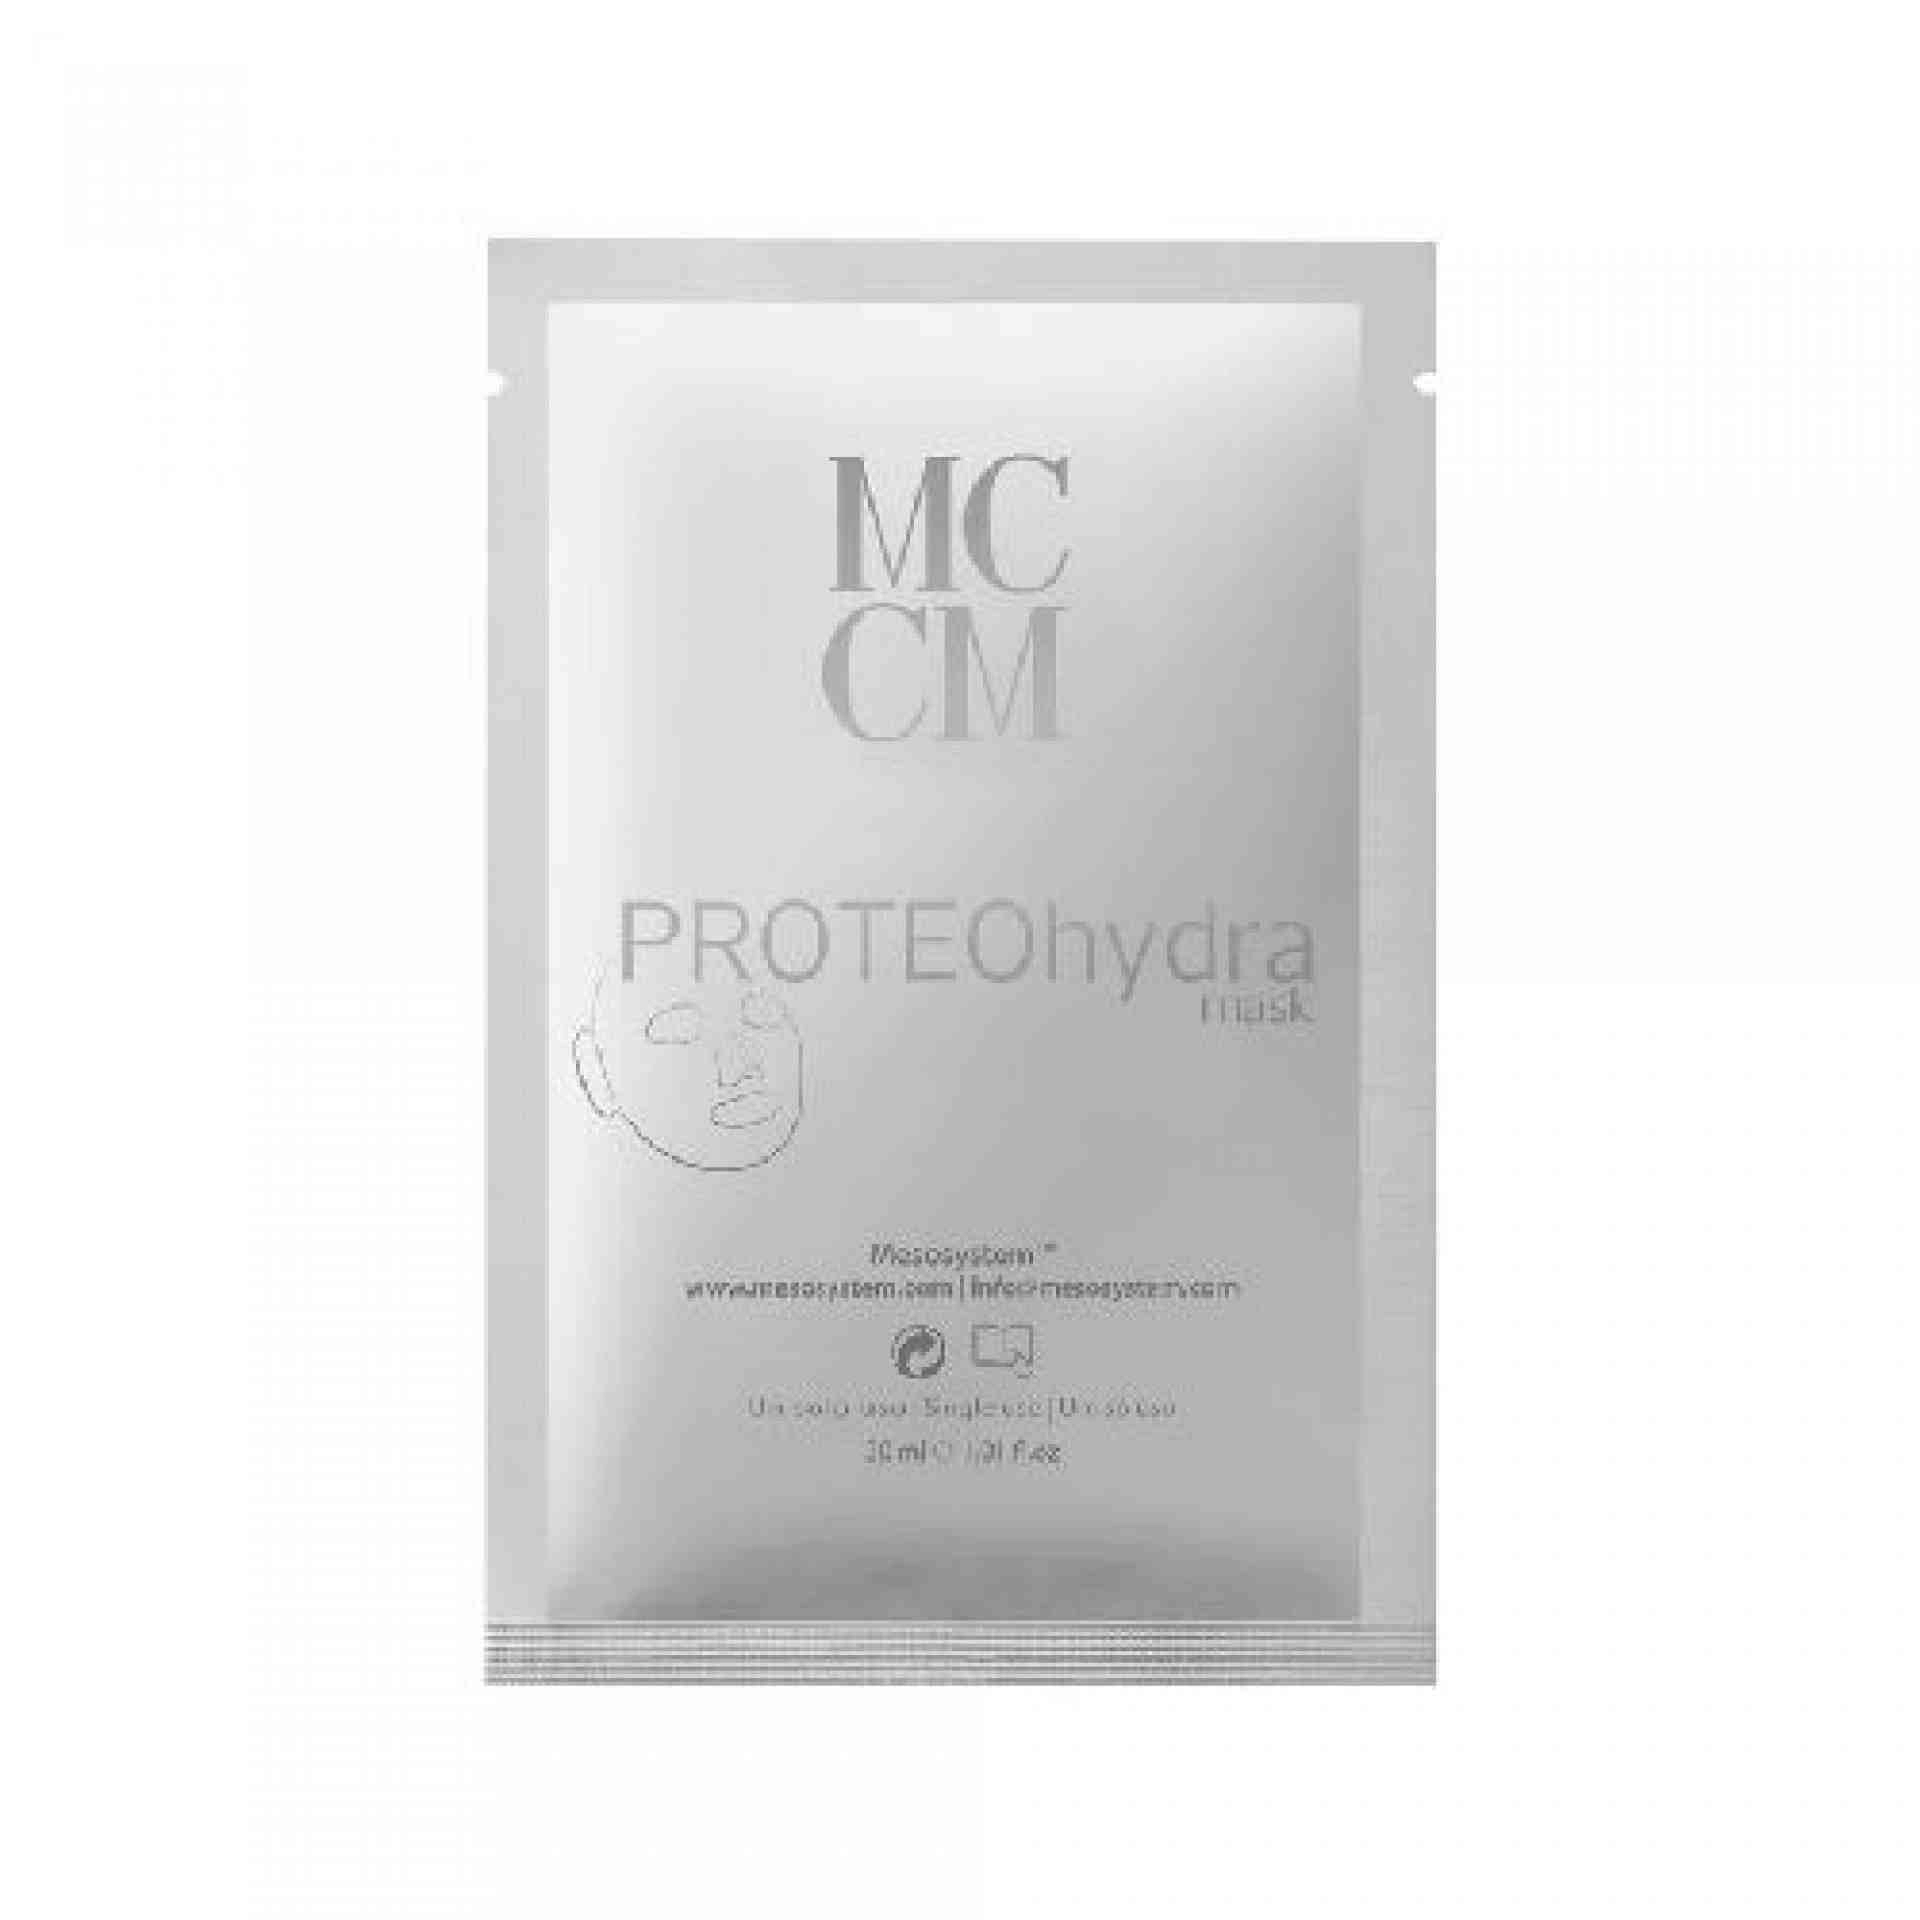 Protheohydra Mask | Mascarilla facial Hidratante 12uds - Hydrogel Line - MCCM ®